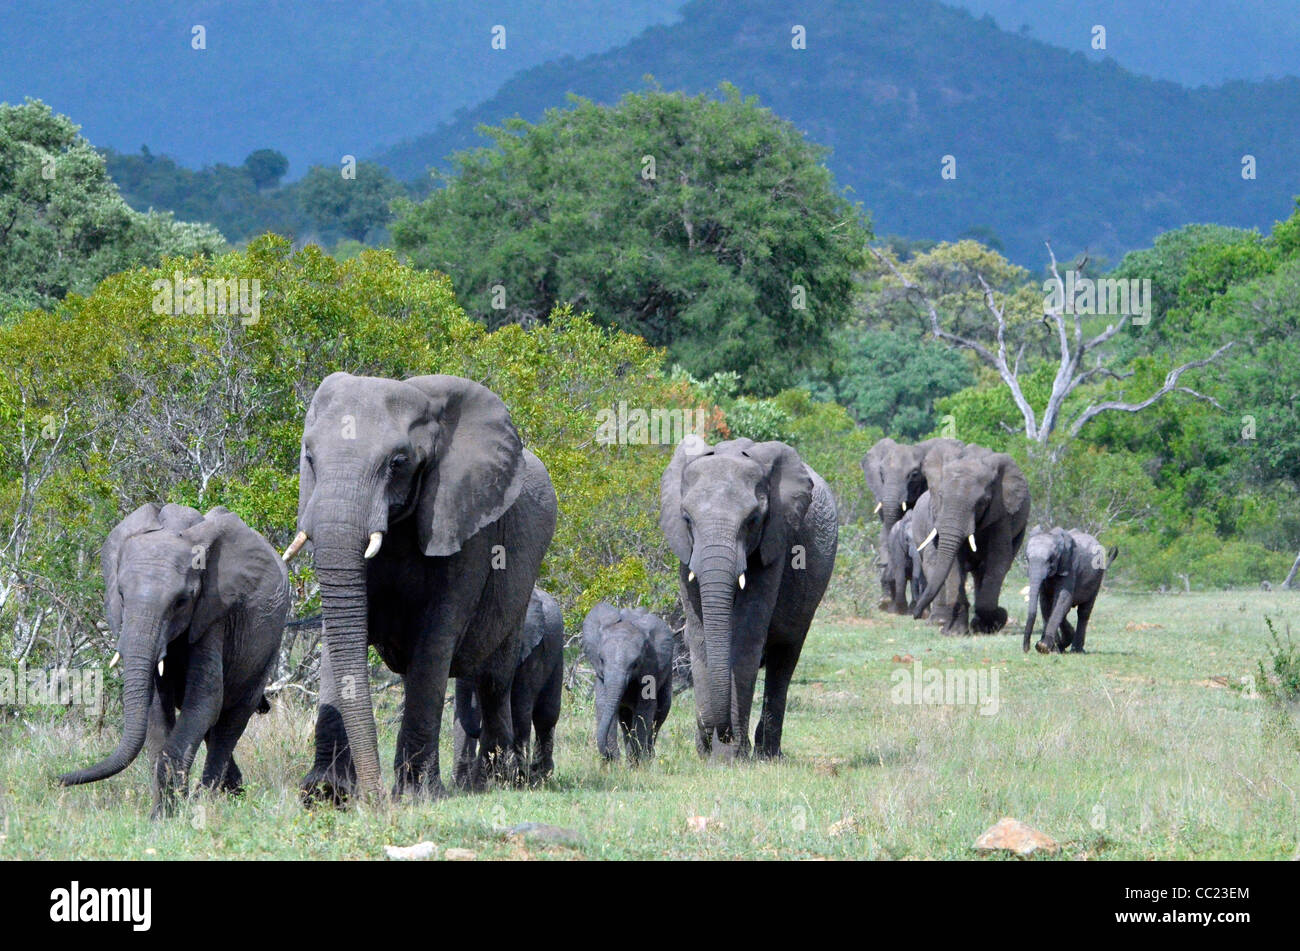 Le parc national Kruger en Afrique du Sud est célèbre pour le visionnement de jeu à des prix abordables. Famille d'éléphants Banque D'Images